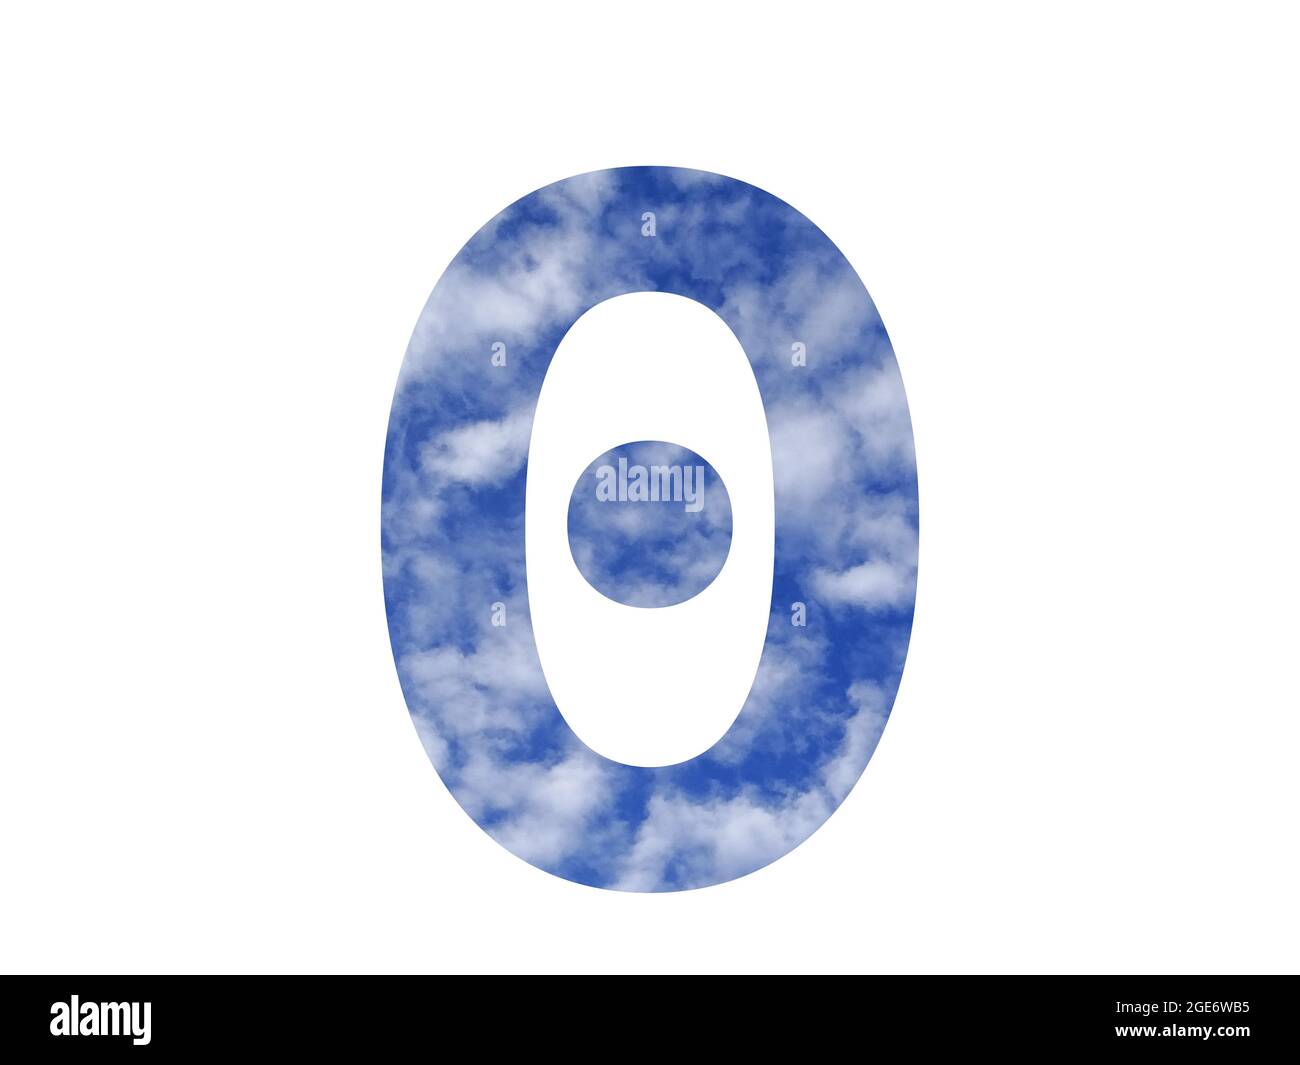 numero 0 dell'alfabeto fatto con cielo blu e nuvole bianche, isolato su sfondo bianco Foto Stock